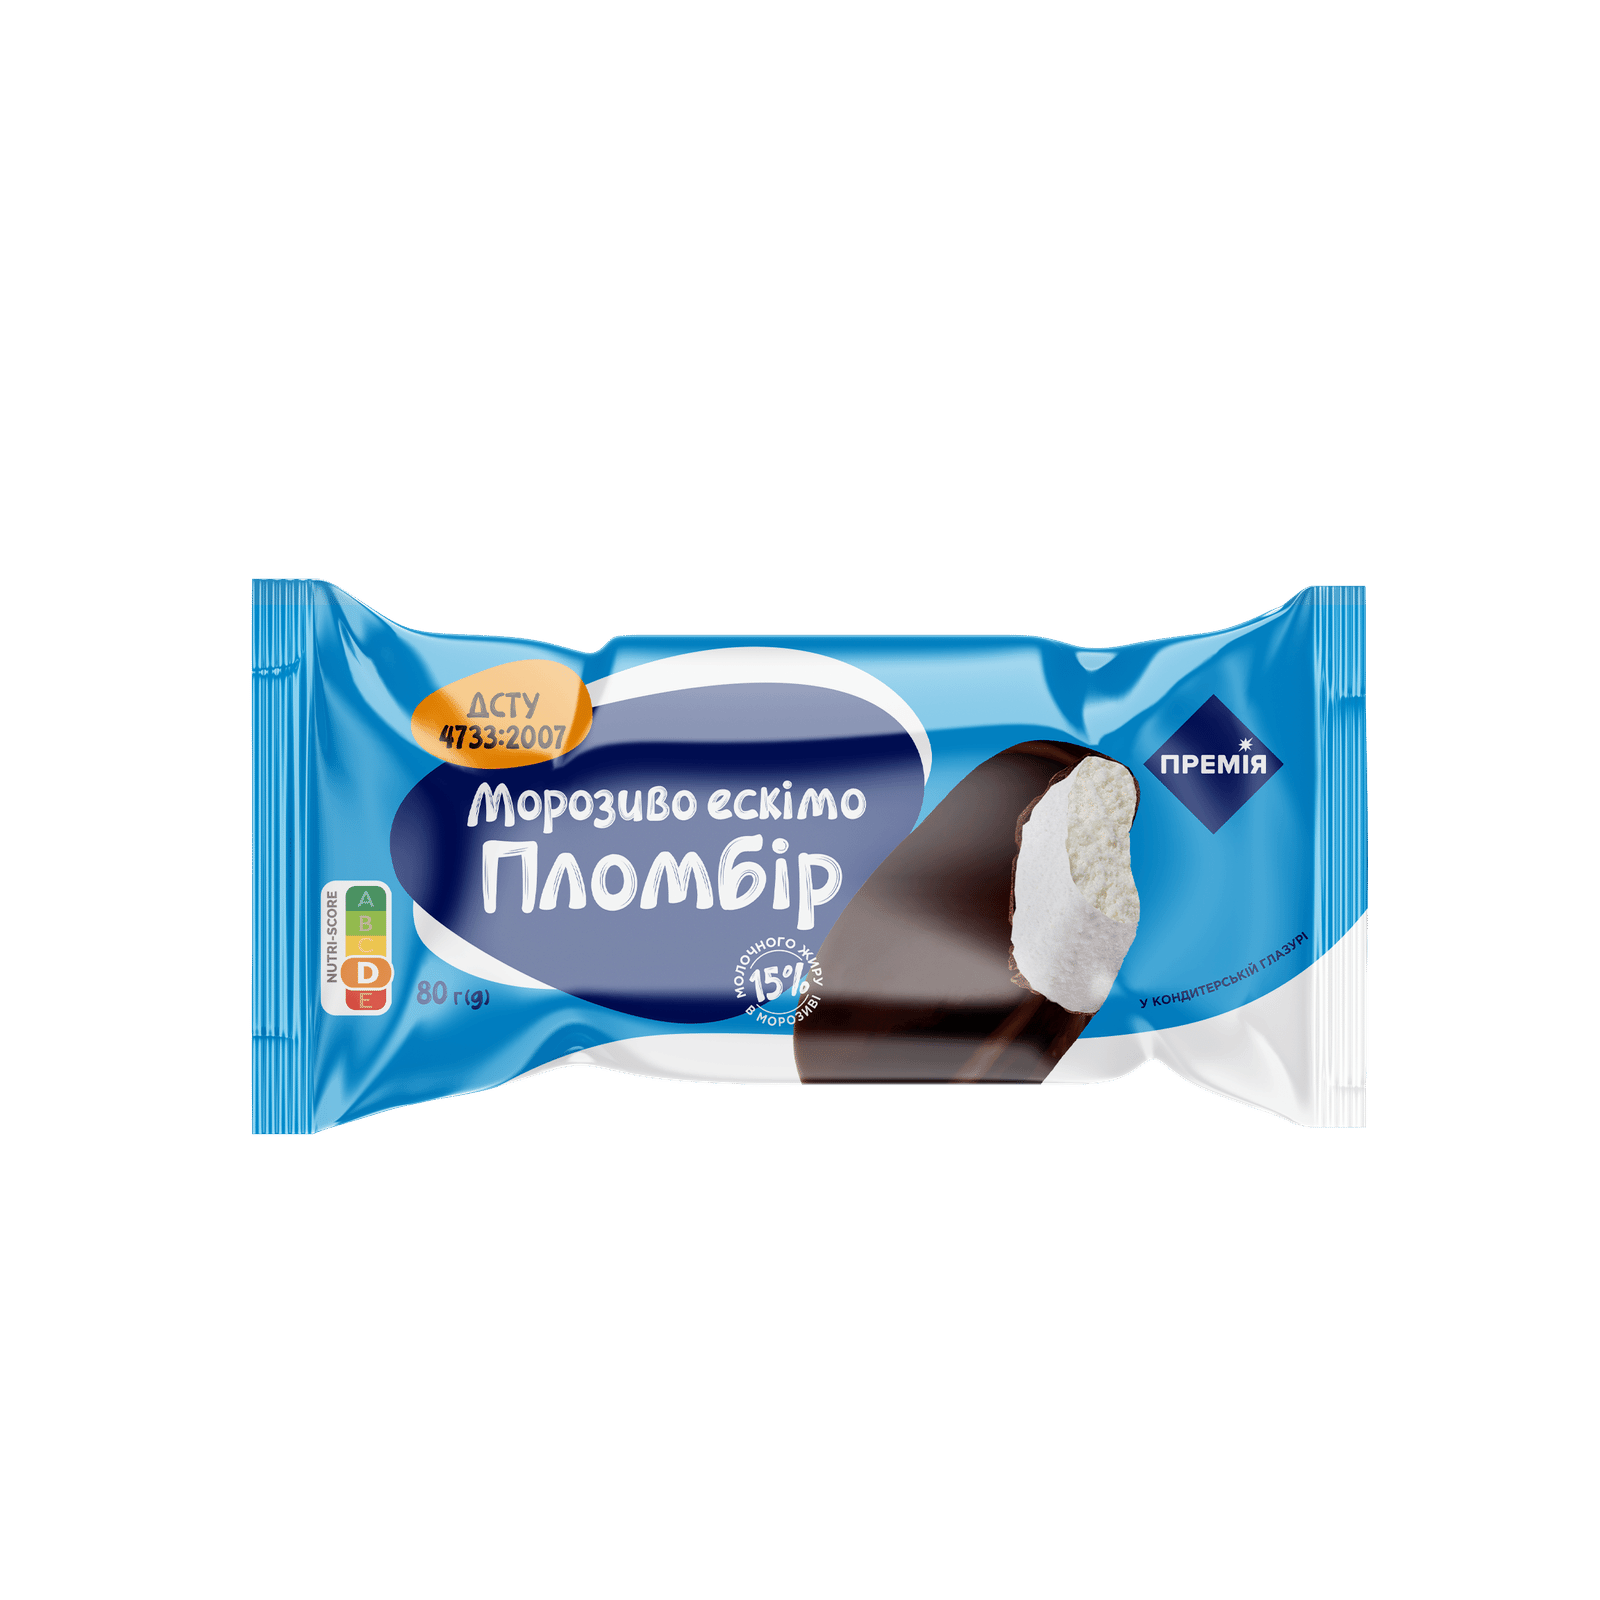 Морозиво ескімо пломбір «Премія»® - 1